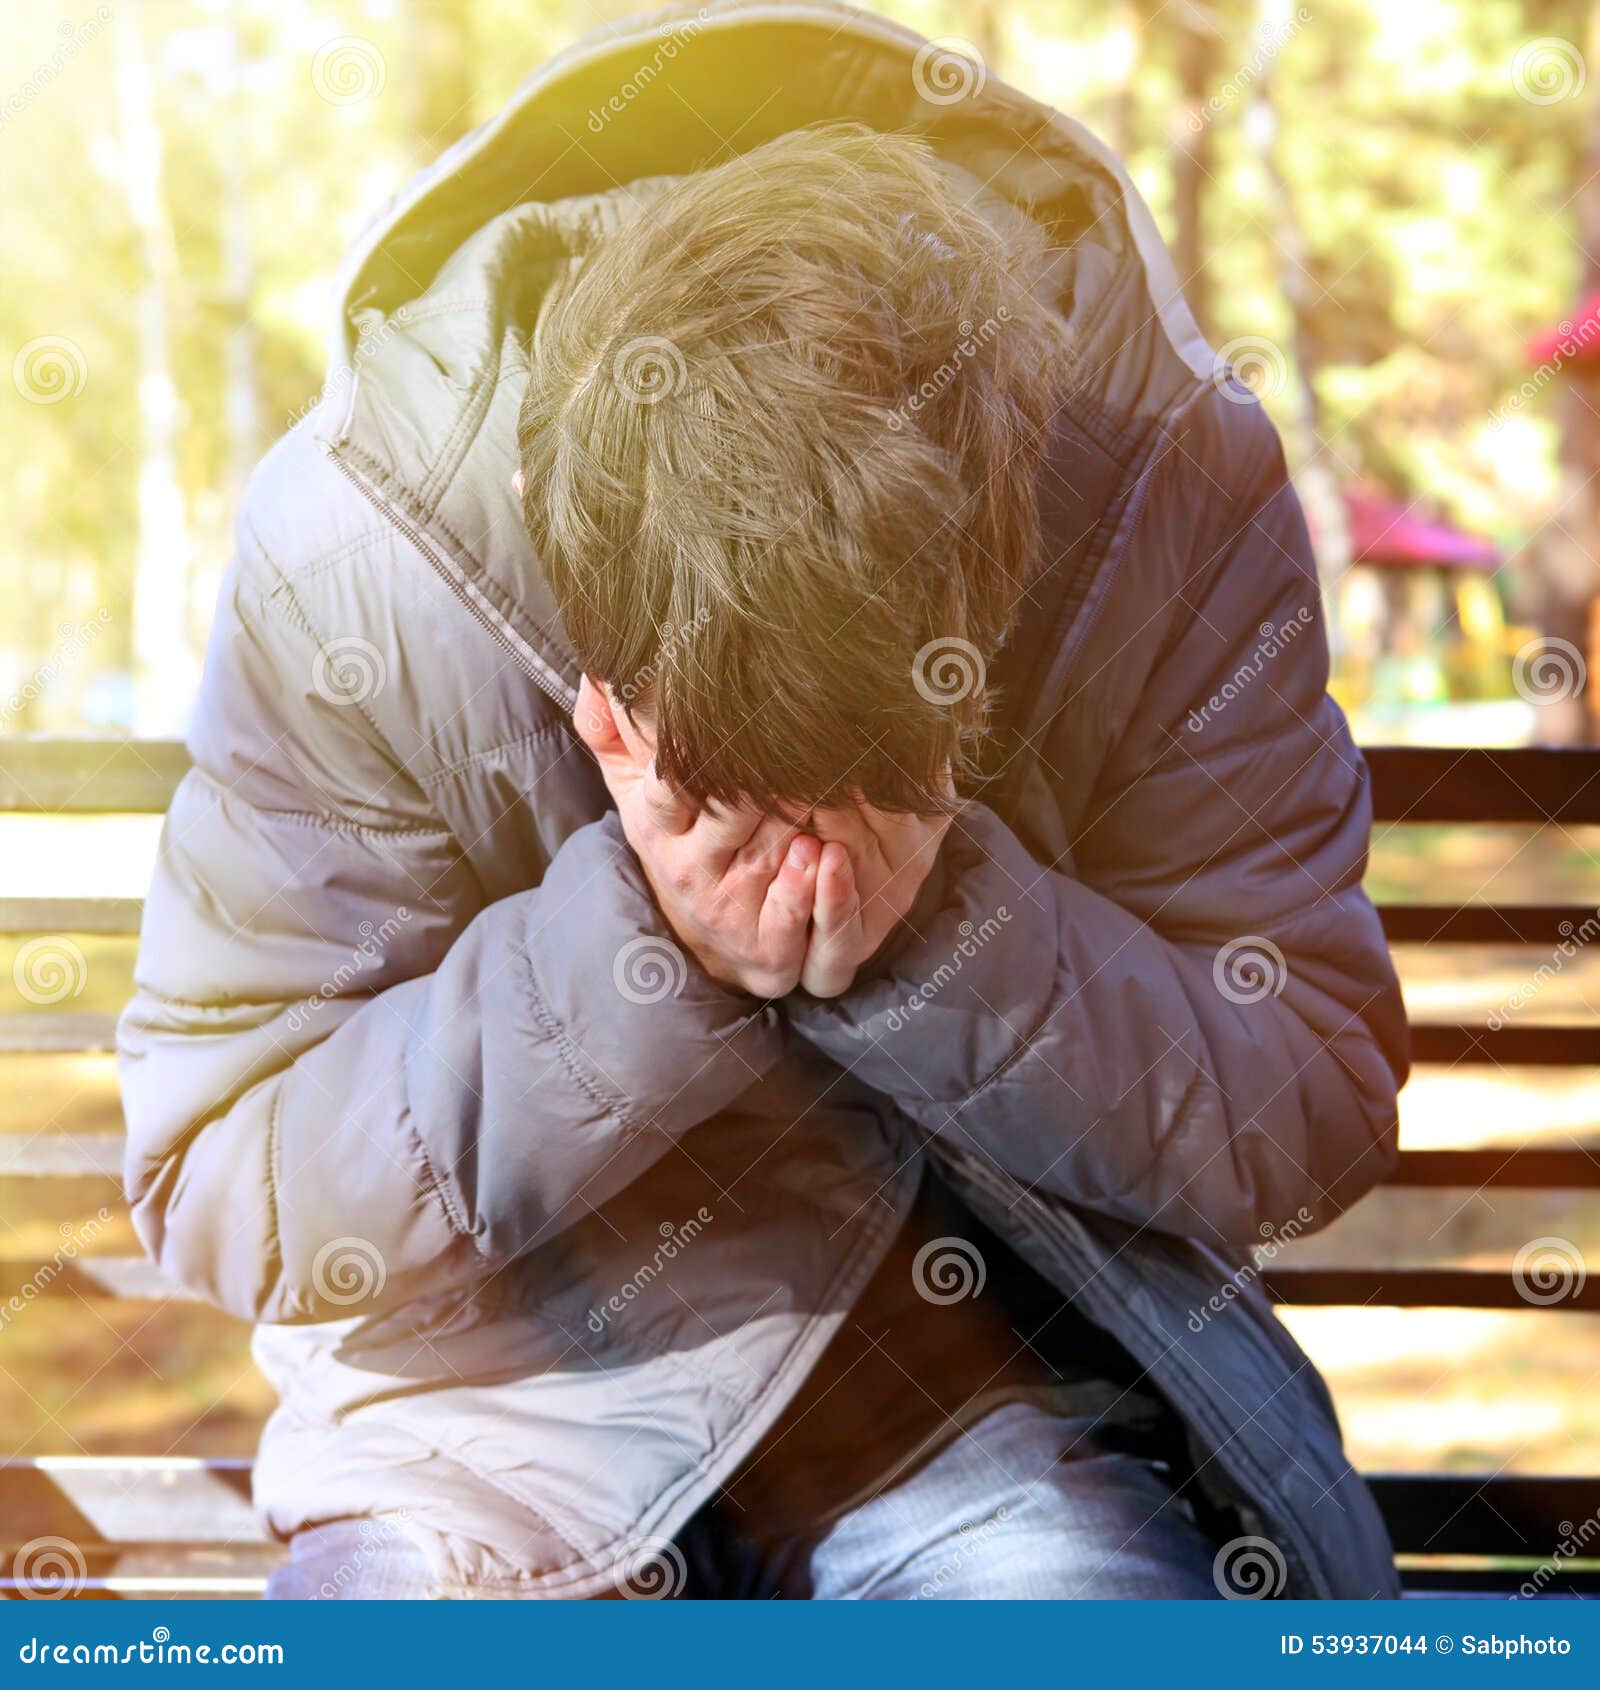 Sad Man outdoor stock photo. Image of distress, nature - 53937044